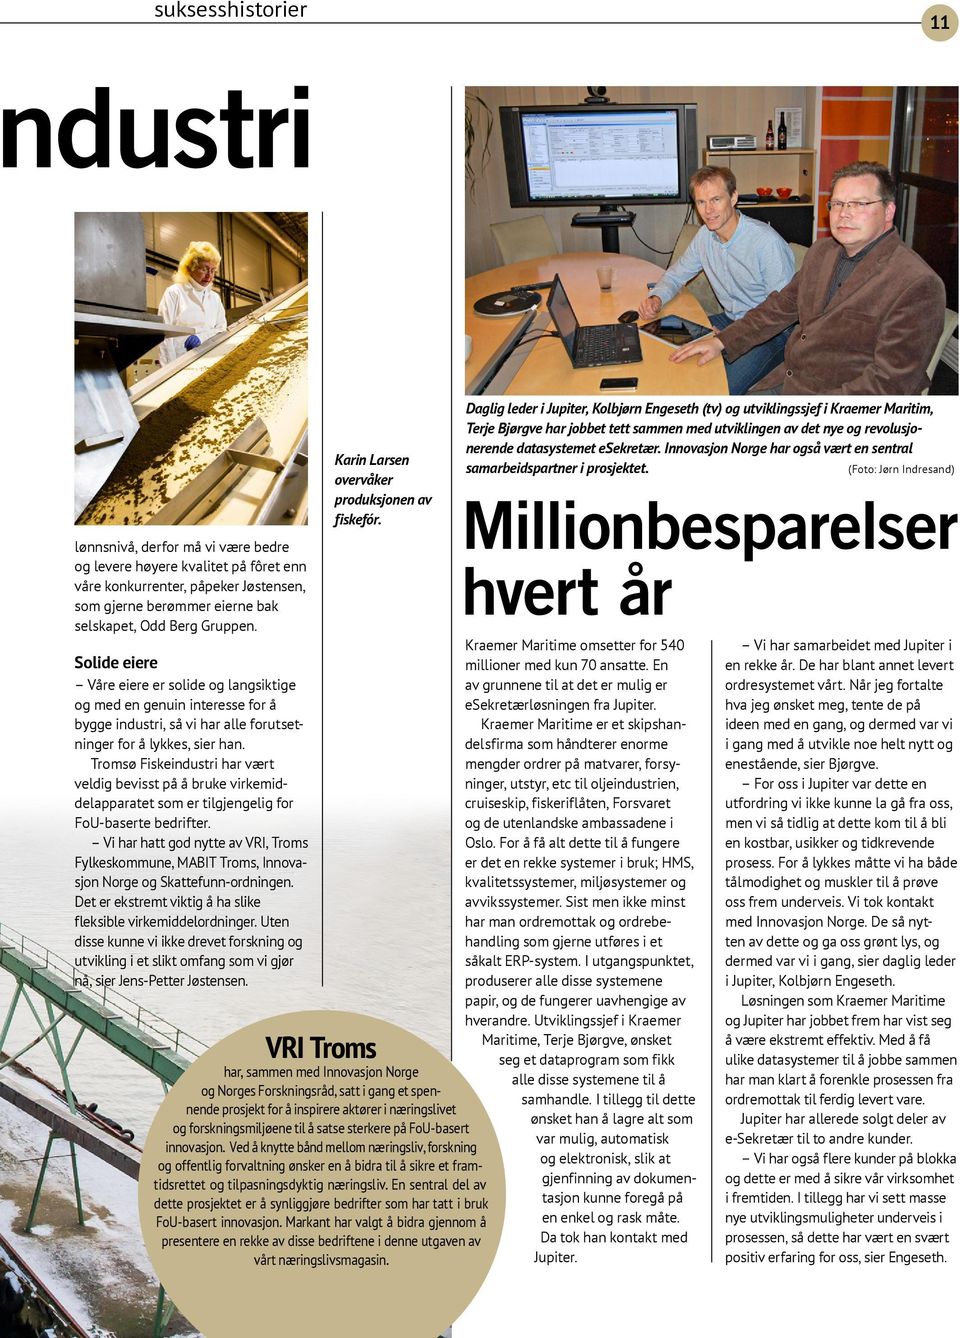 Tromsø Fiskeindustri har vært veldig bevisst på å bruke virkemiddelapparatet som er tilgjengelig for FoU-baserte bedrifter.